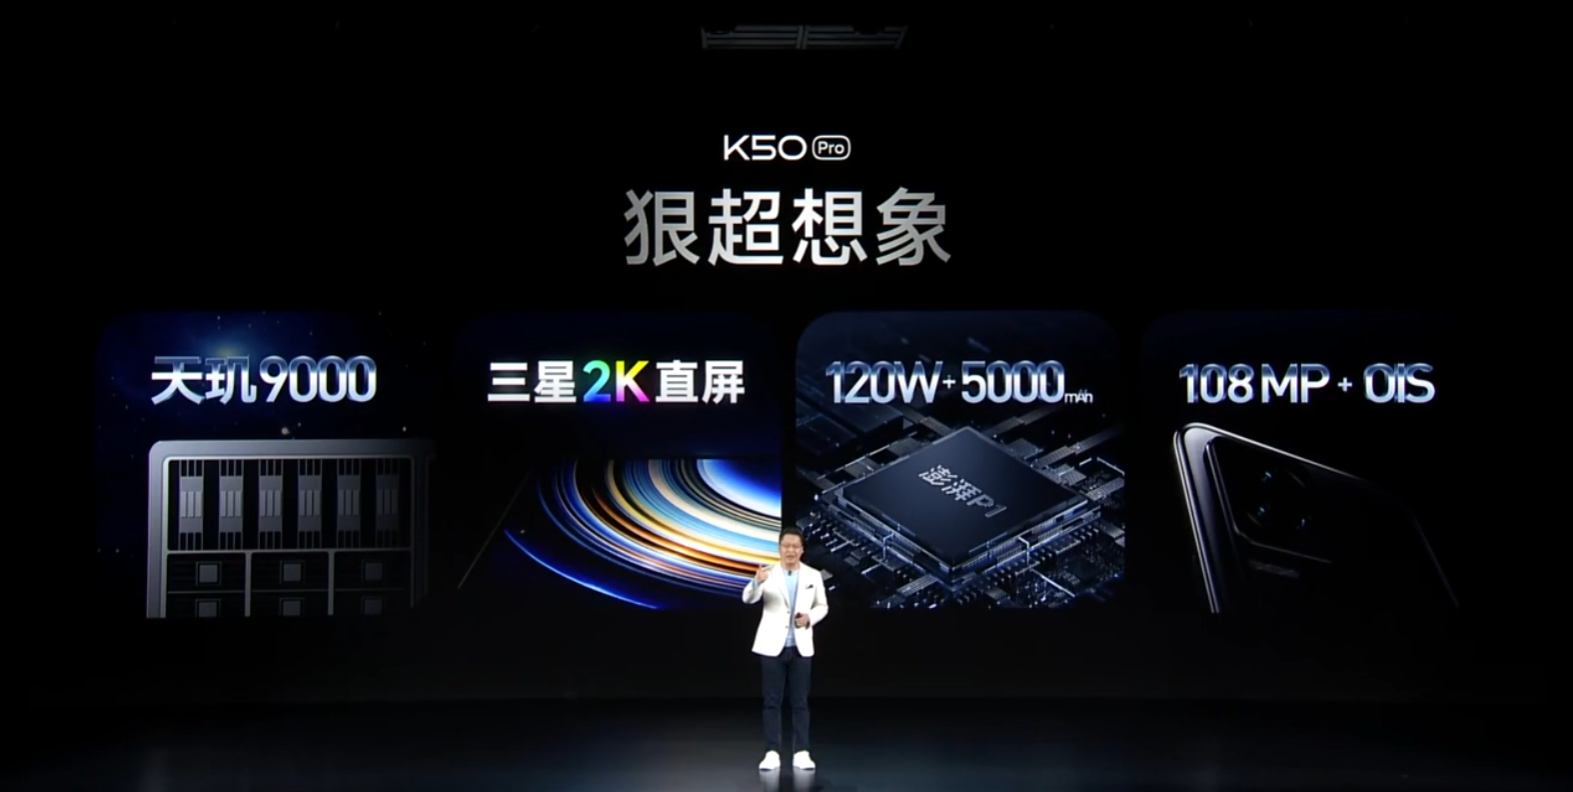 Redmi品牌总经理卢伟冰发布会现场表示“天玑8100解决了高性能和低功耗兼得的行业难题”(图源网络)